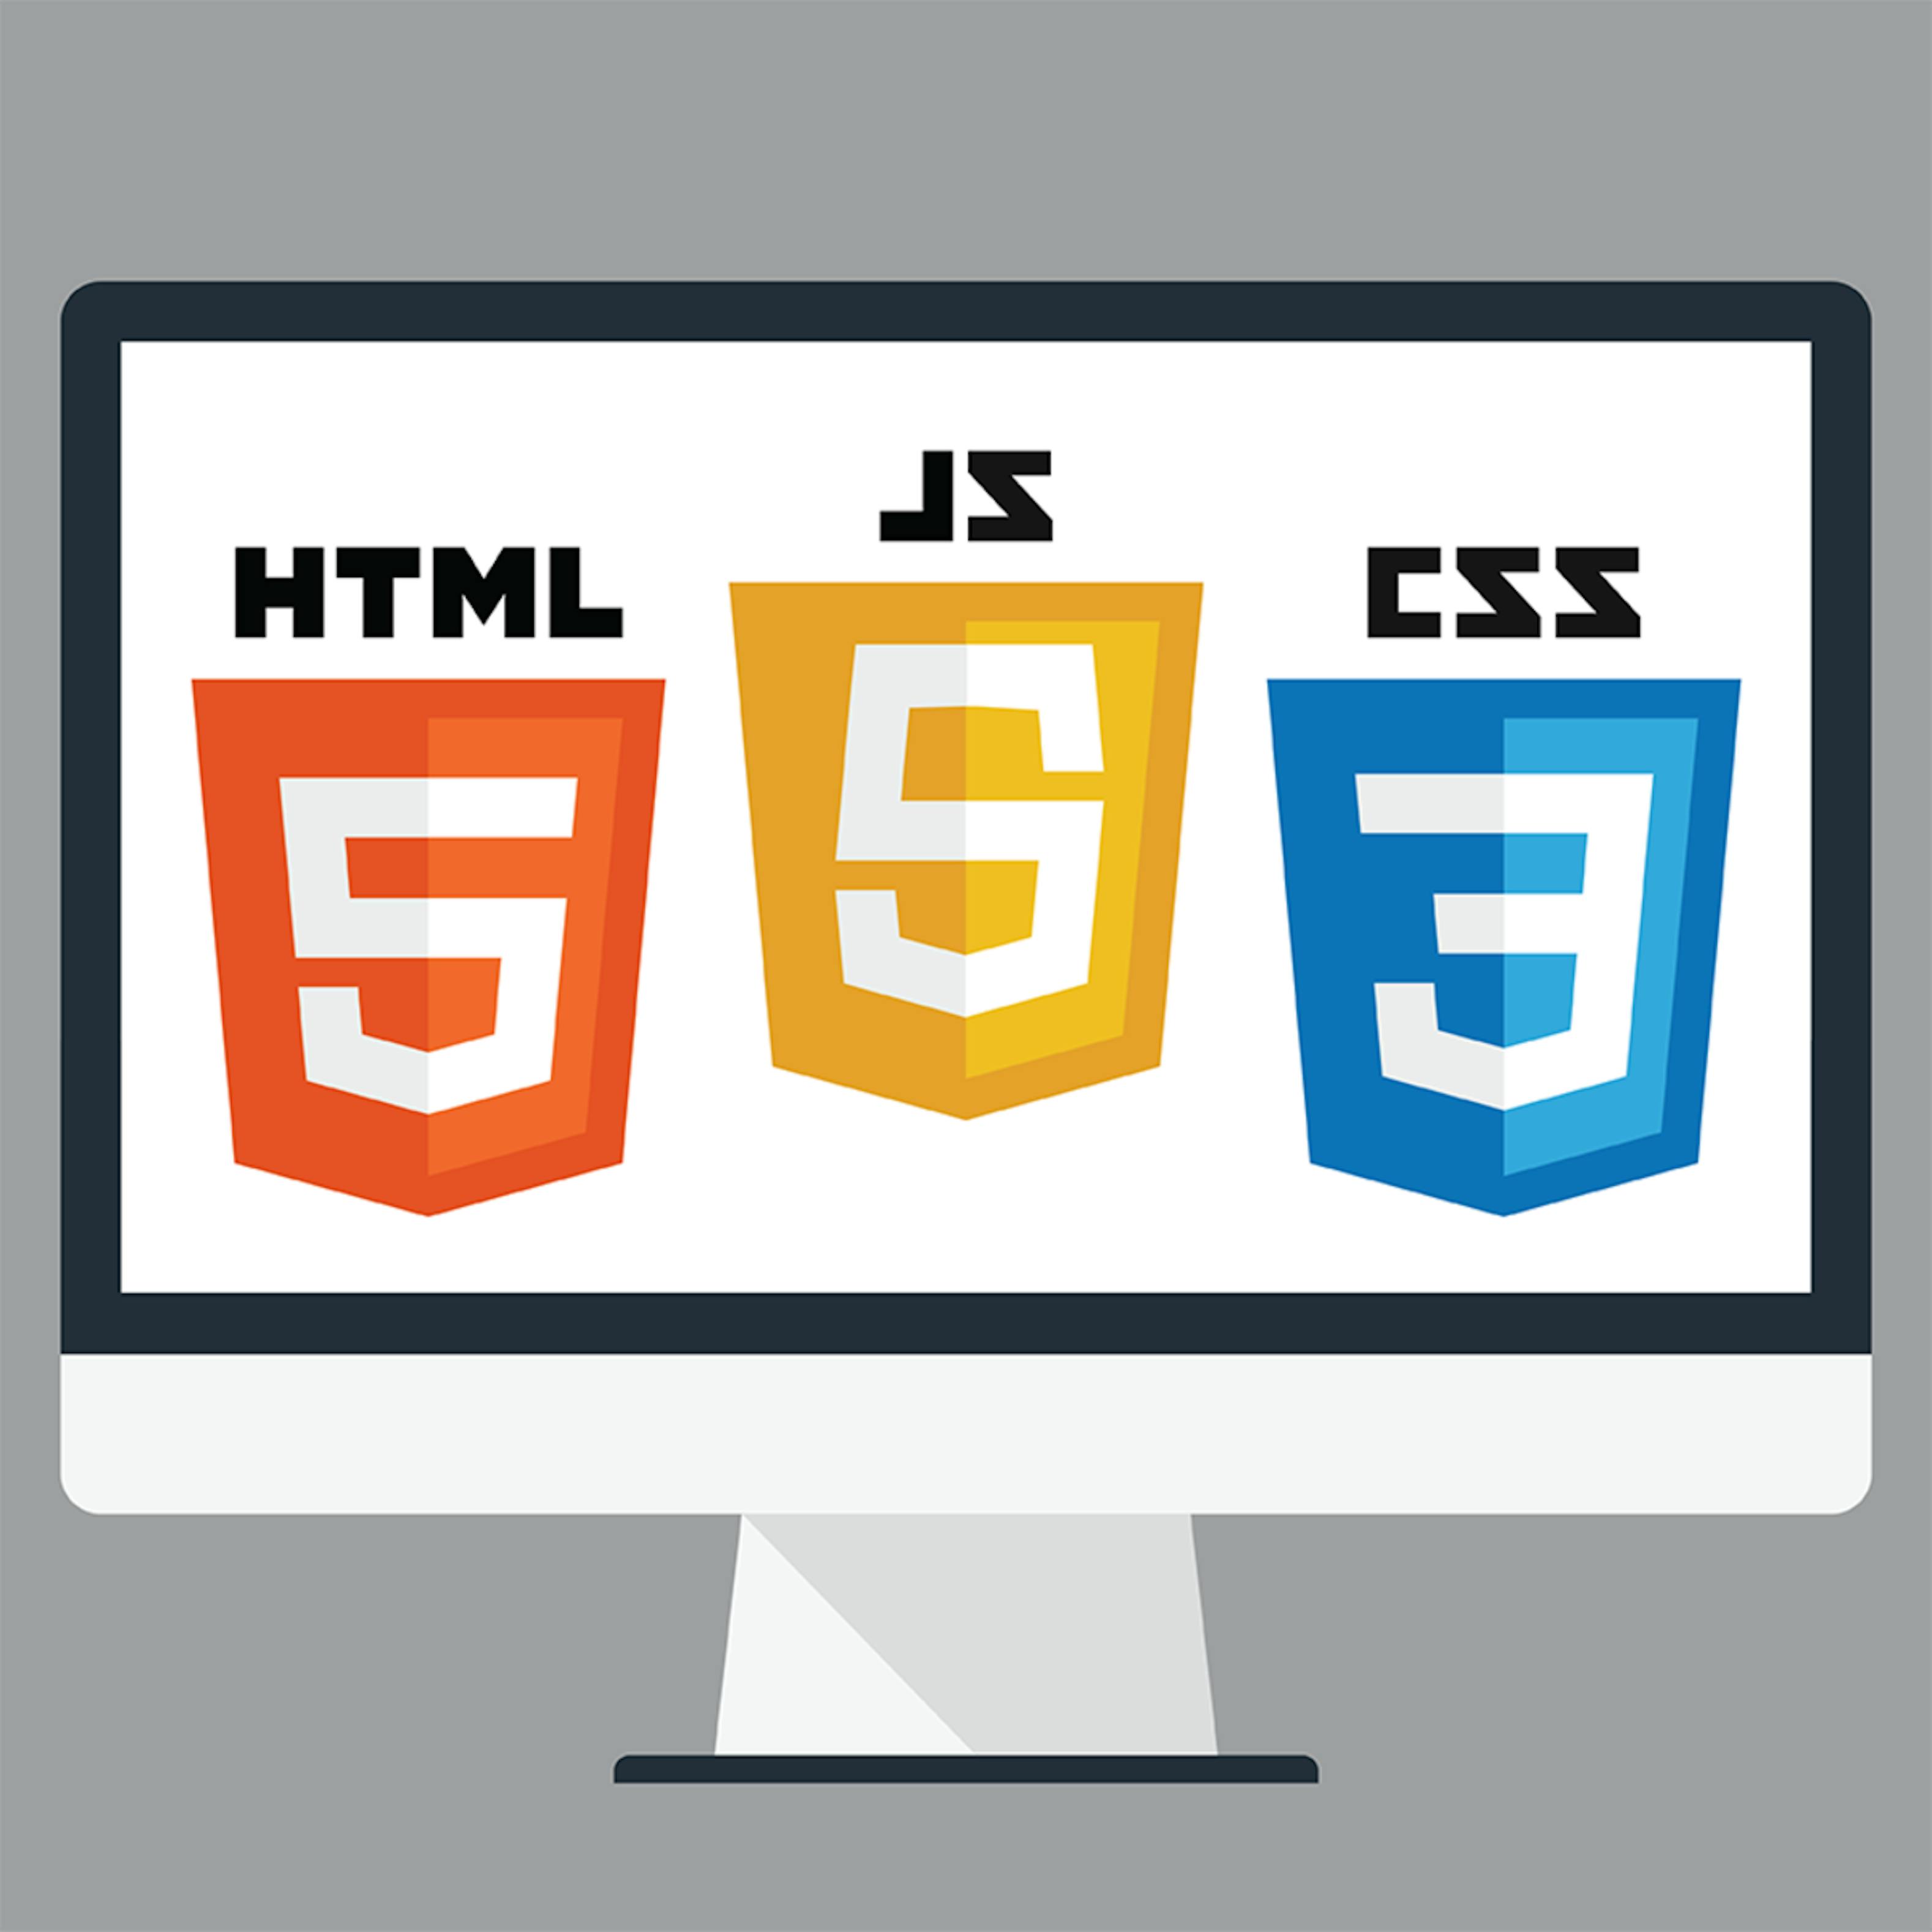 Hasil gambar untuk html css javascript